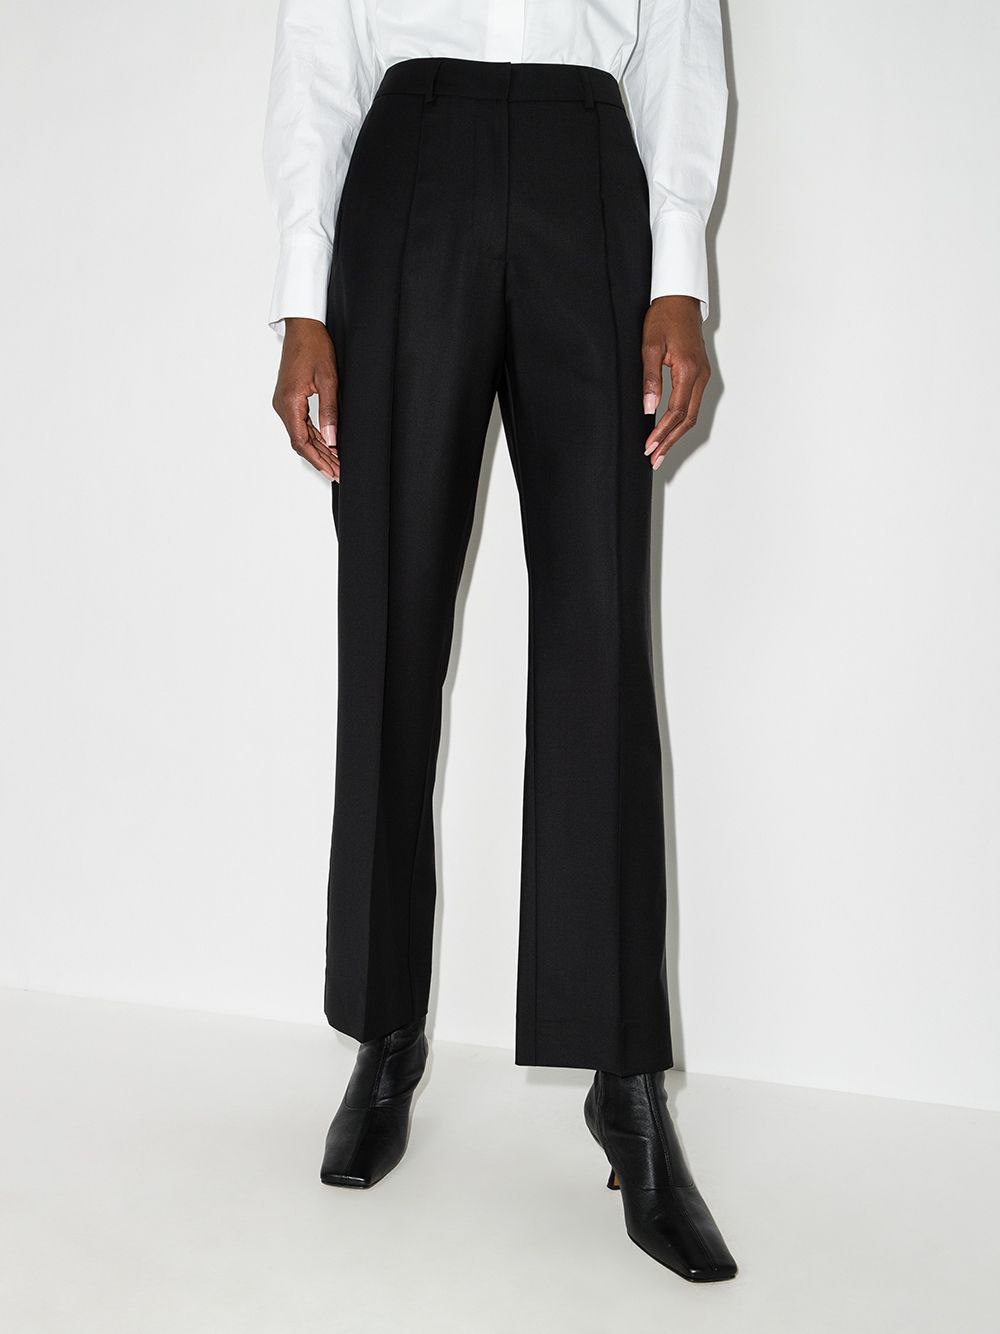 MDB 16098 ( Trouser Suit Design )